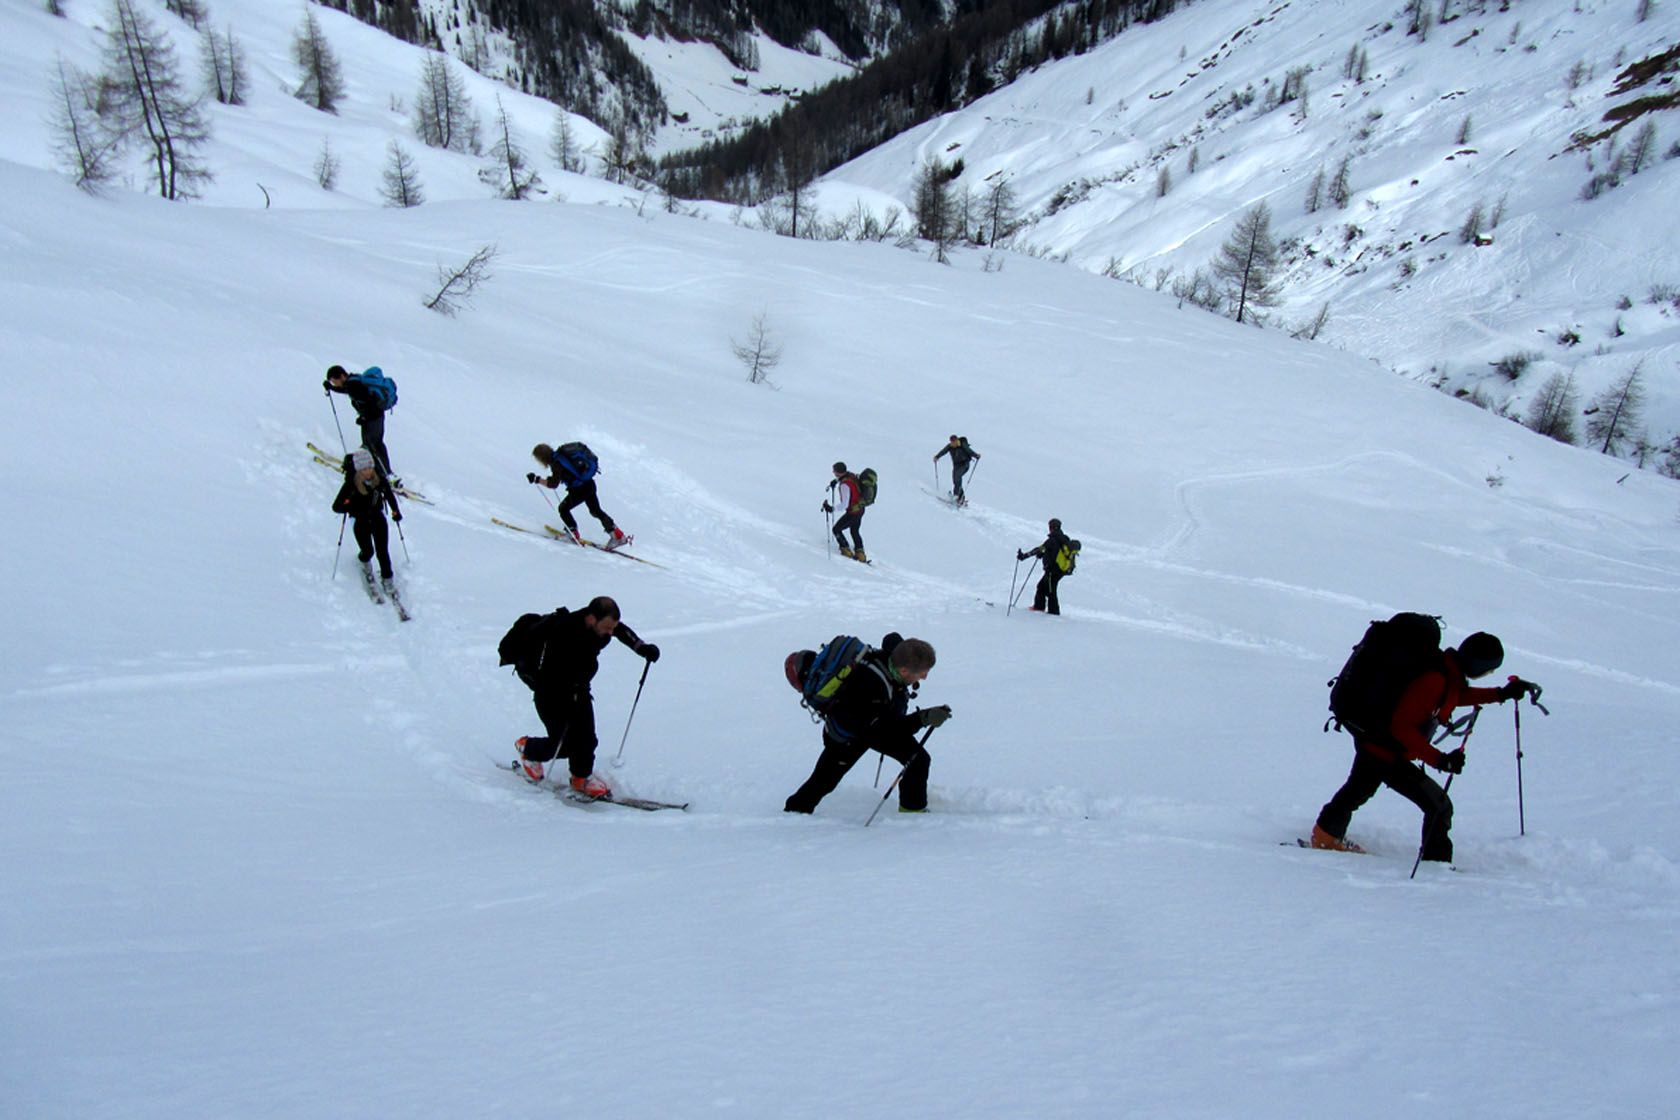 Inversioni in salita durante una gita di sci alpinismo